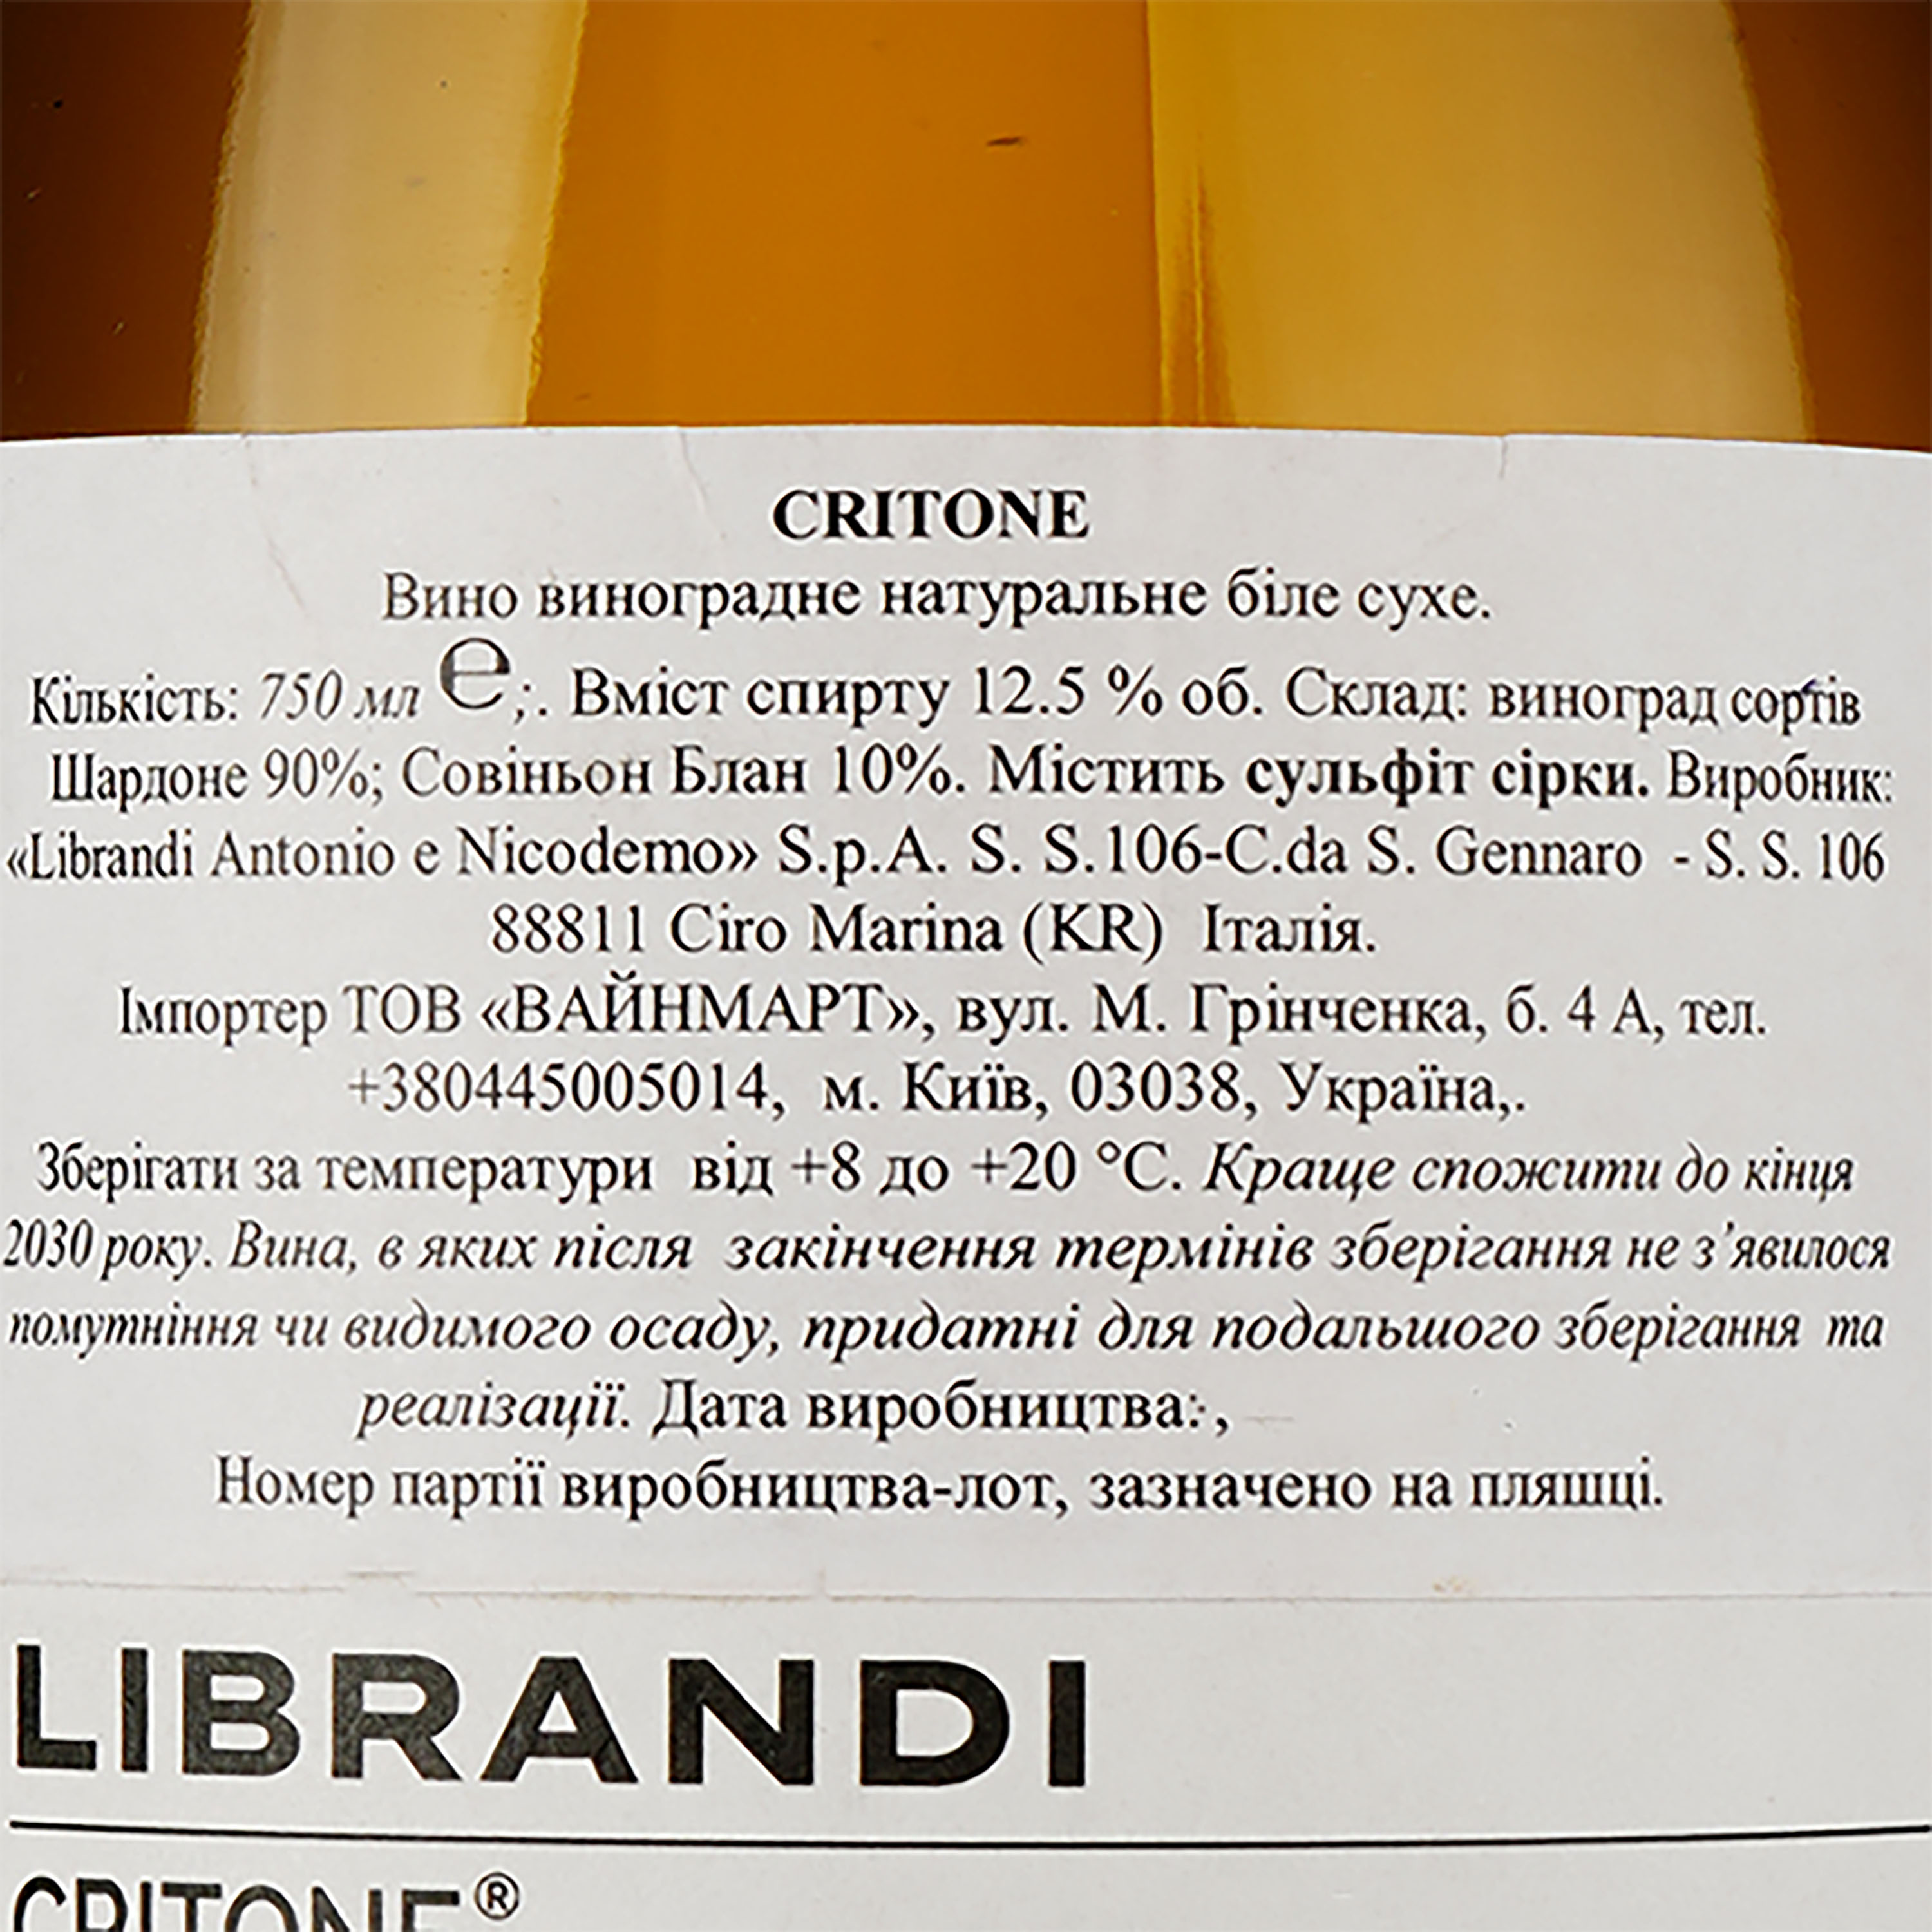 Вино Librandi Critone Bianco, біле, сухе, 0,75 л - фото 3